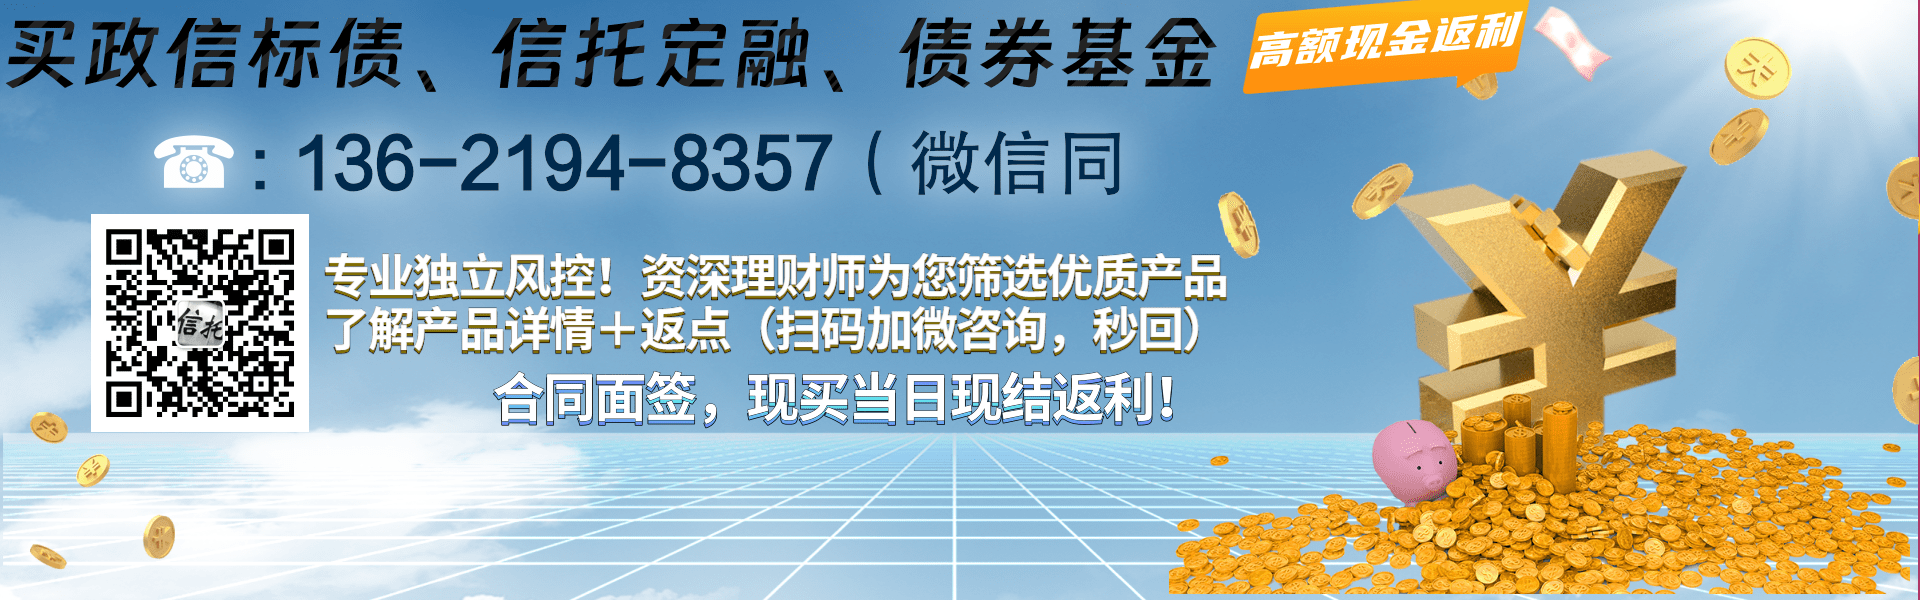 河南林州市城市投资2023年债权一期